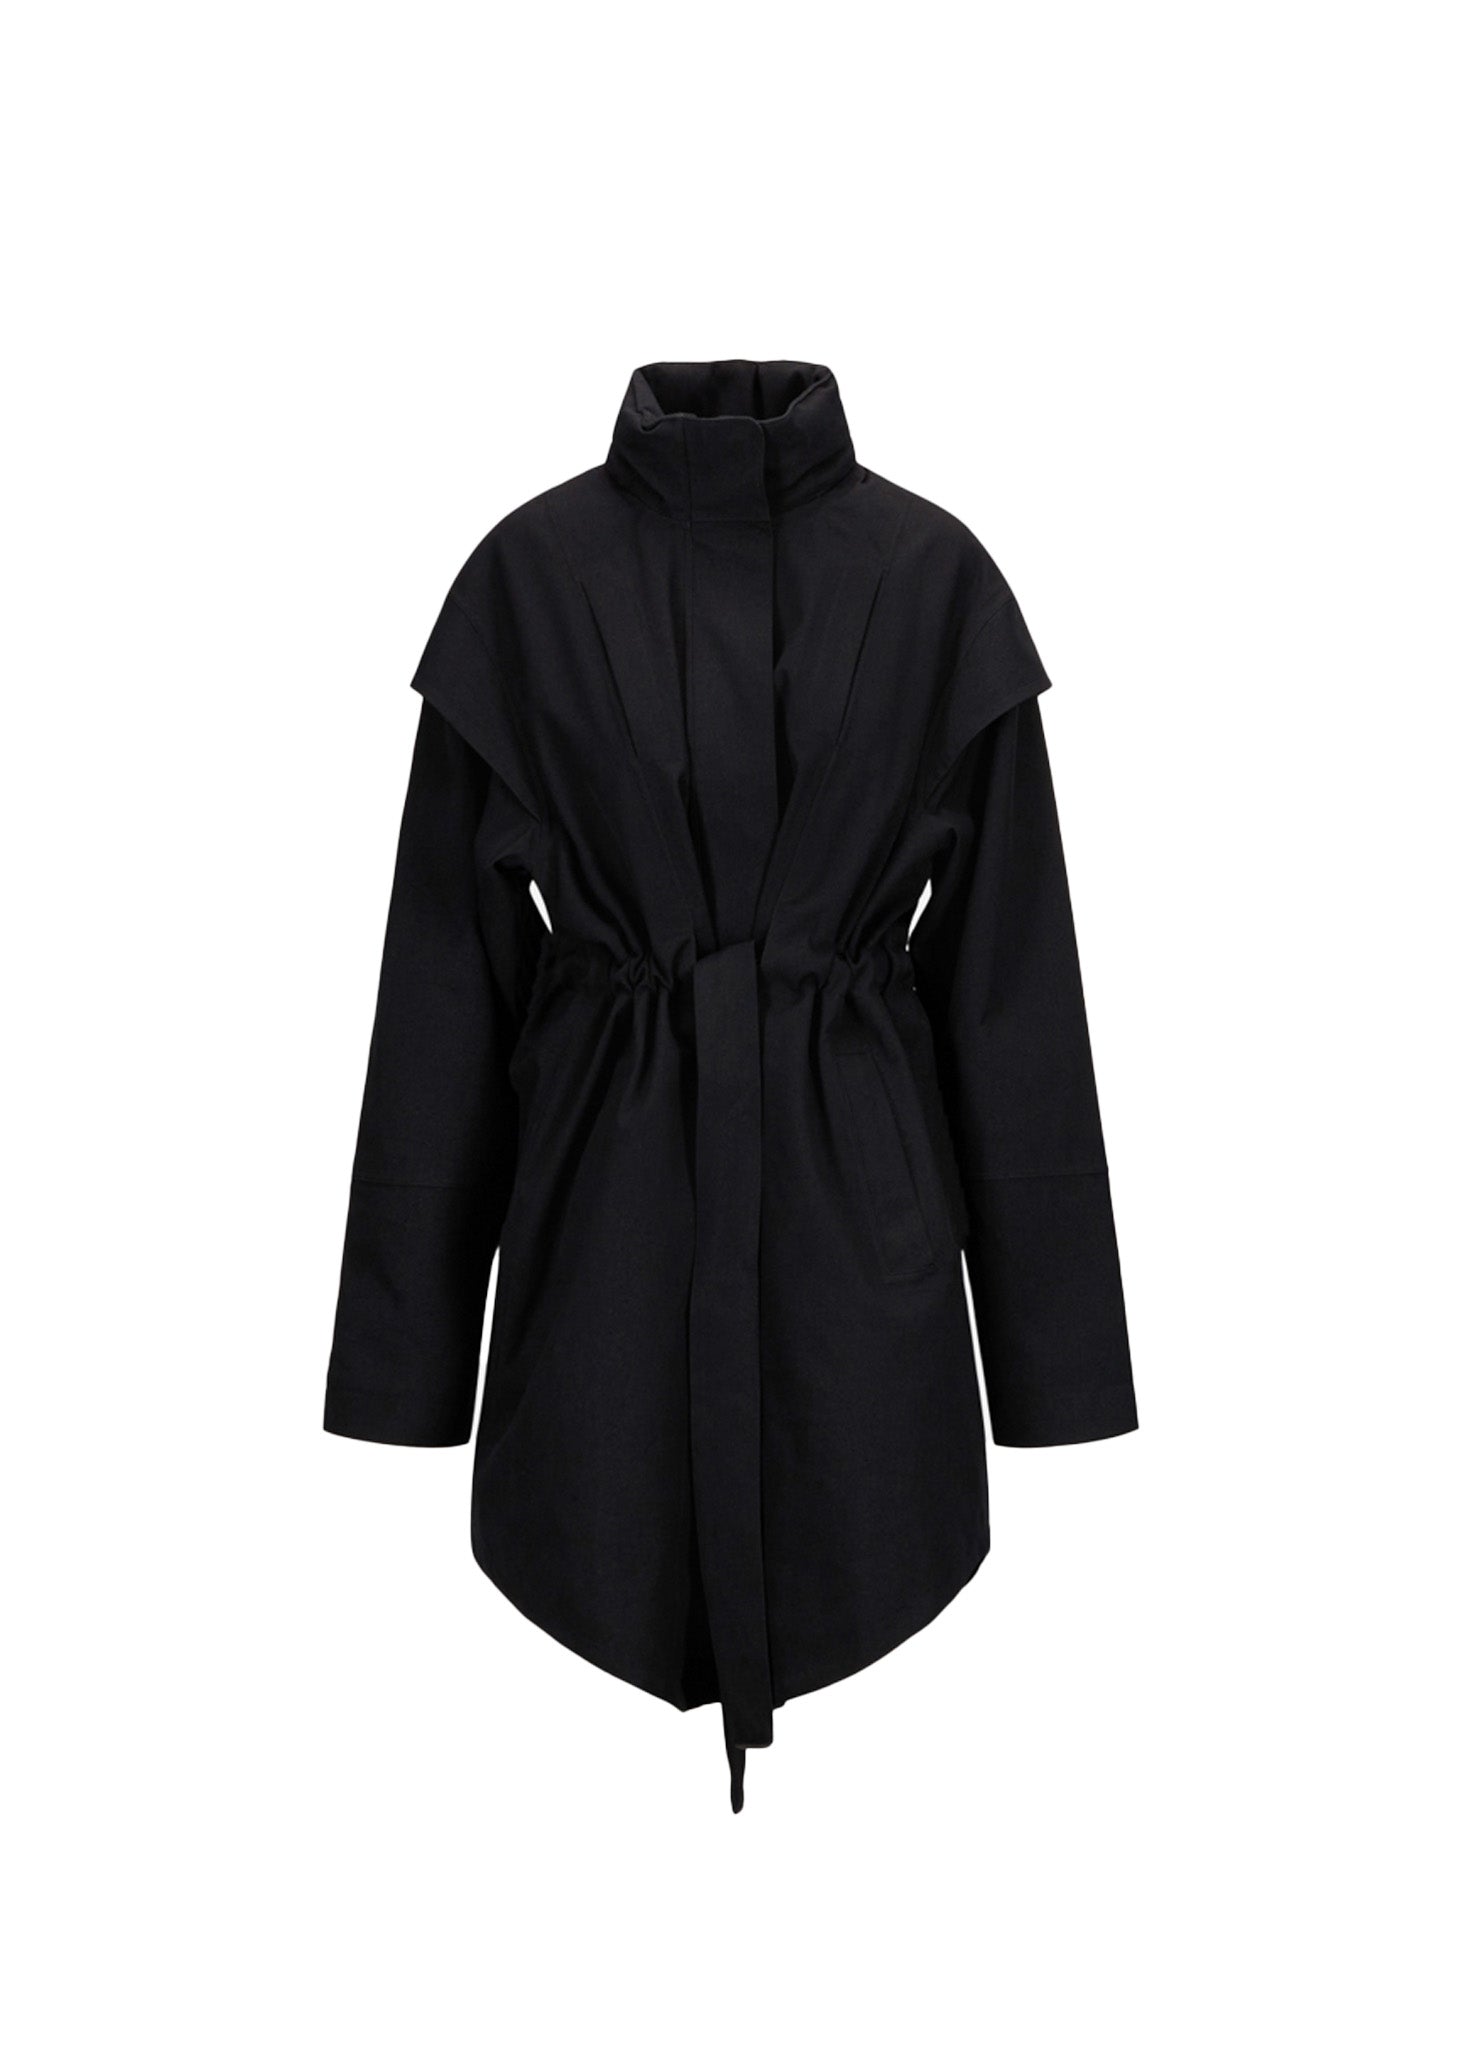 BRGN Monsun Coat Coats 095 New Black